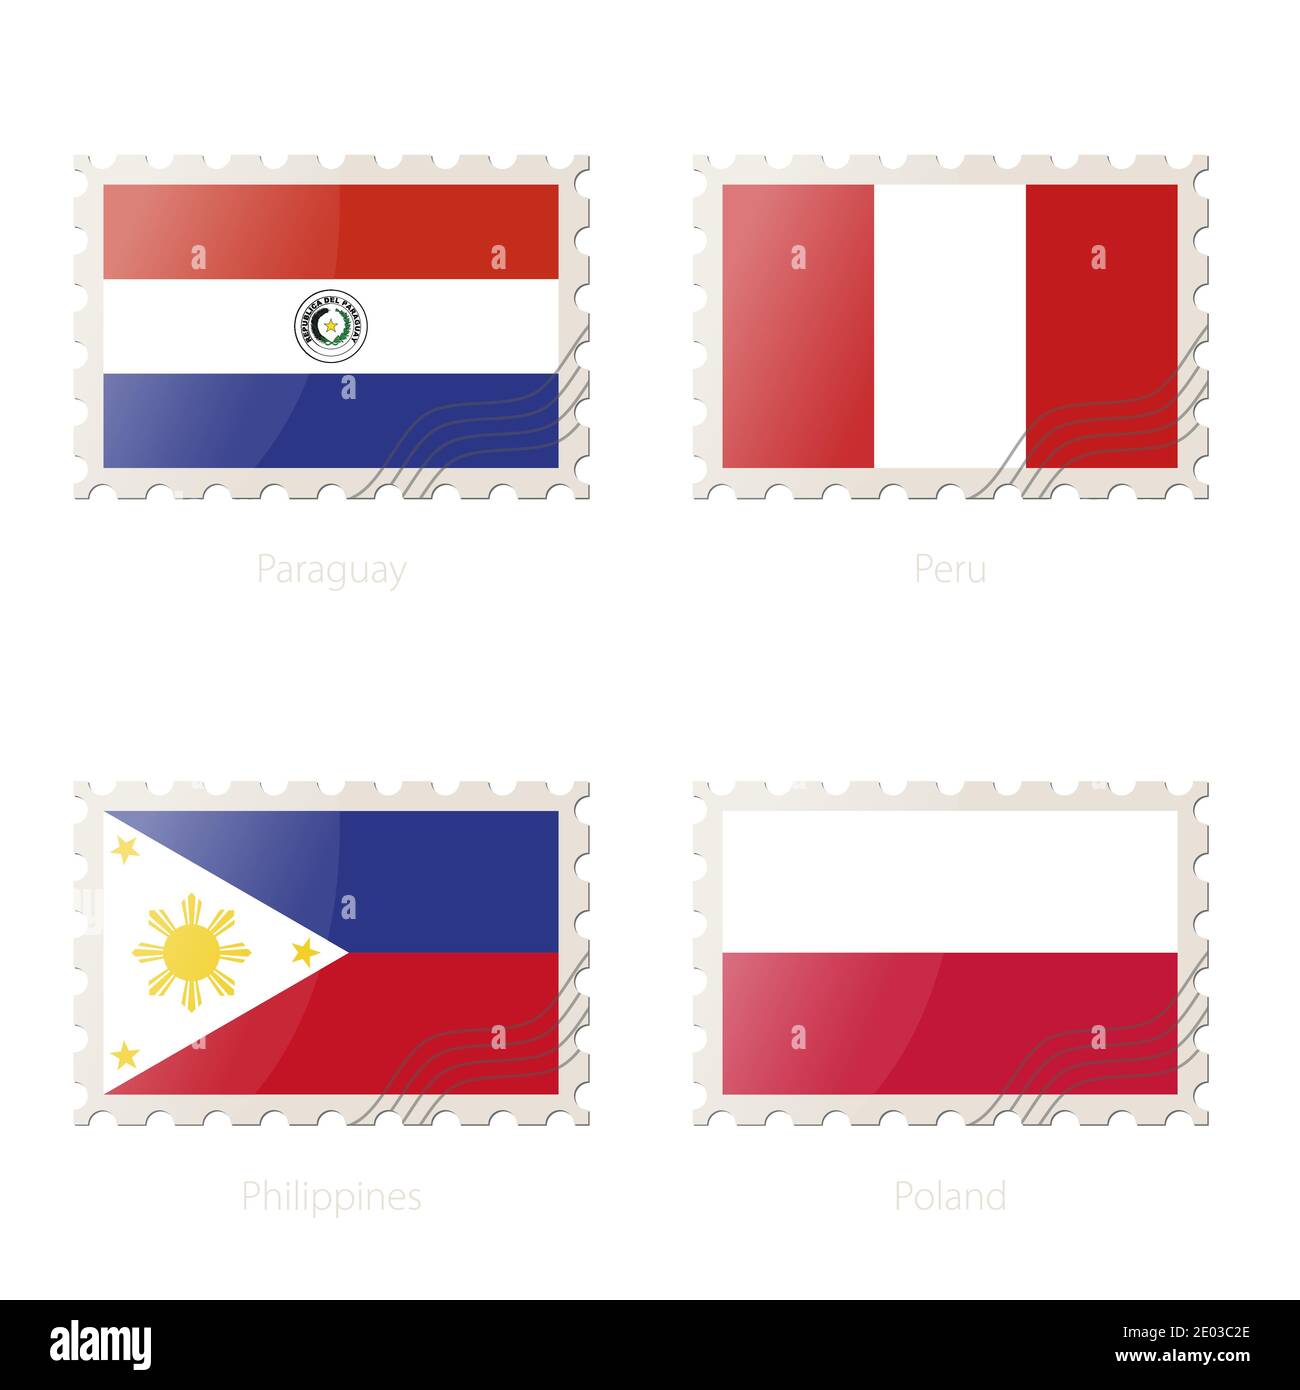 Timbre-poste avec l'image du Paraguay, Pérou, Philippines, Pologne drapeau. Philippines, Pologne, Paraguay, Pérou Pavillon Postage sur fond blanc avec SH Illustration de Vecteur